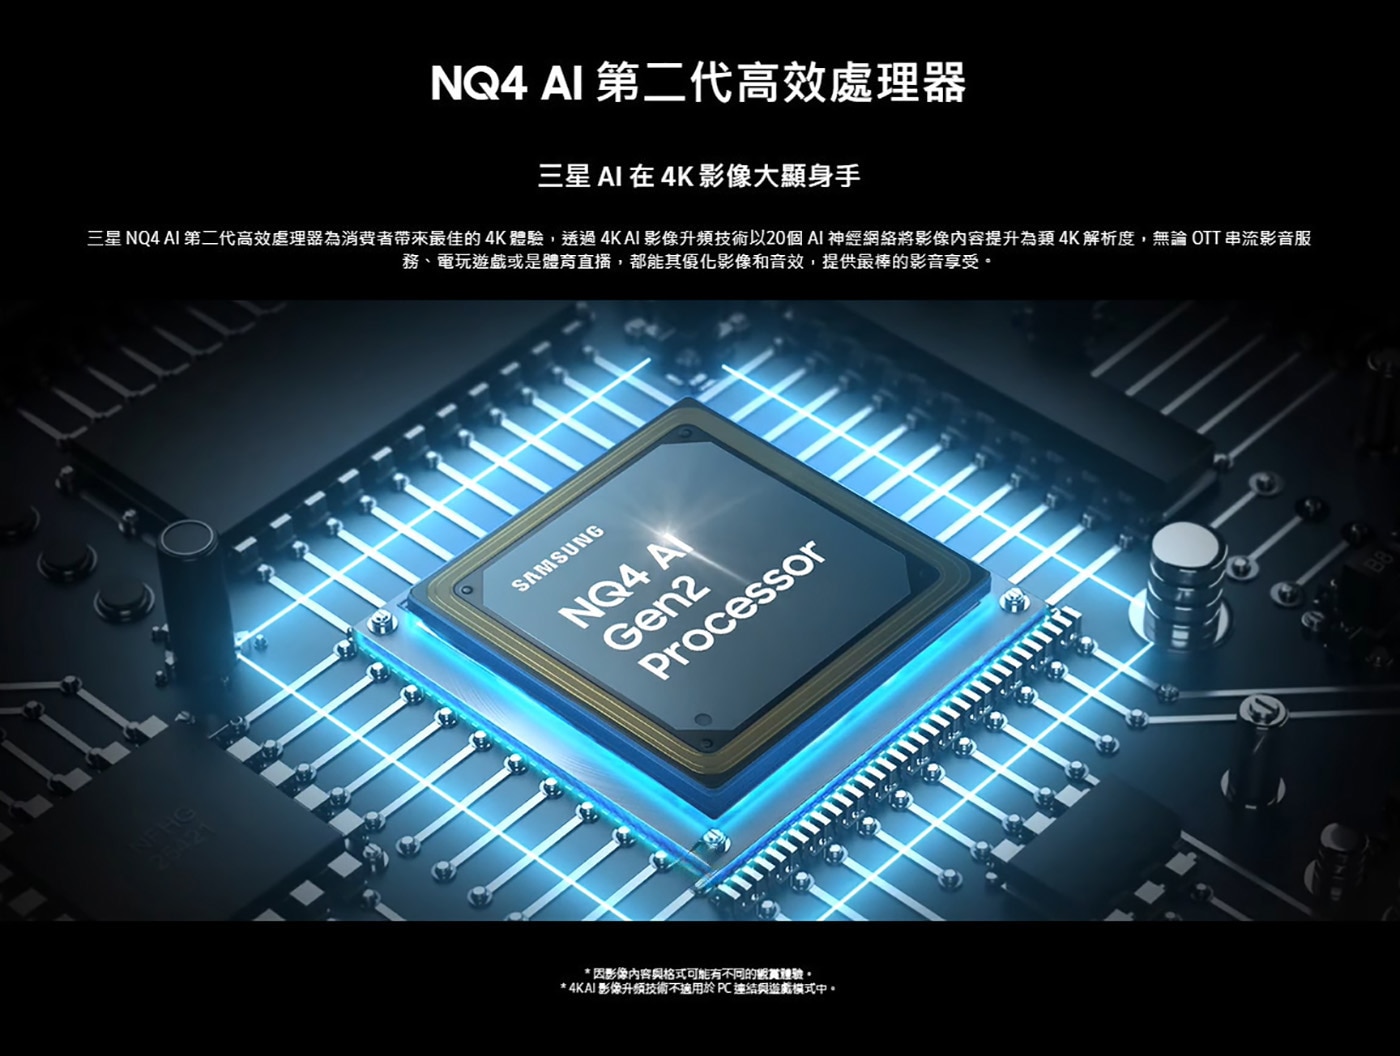 Samsung 75吋 4K Neo QLED 量子智慧顯示器 QA75QN85DBXXZW